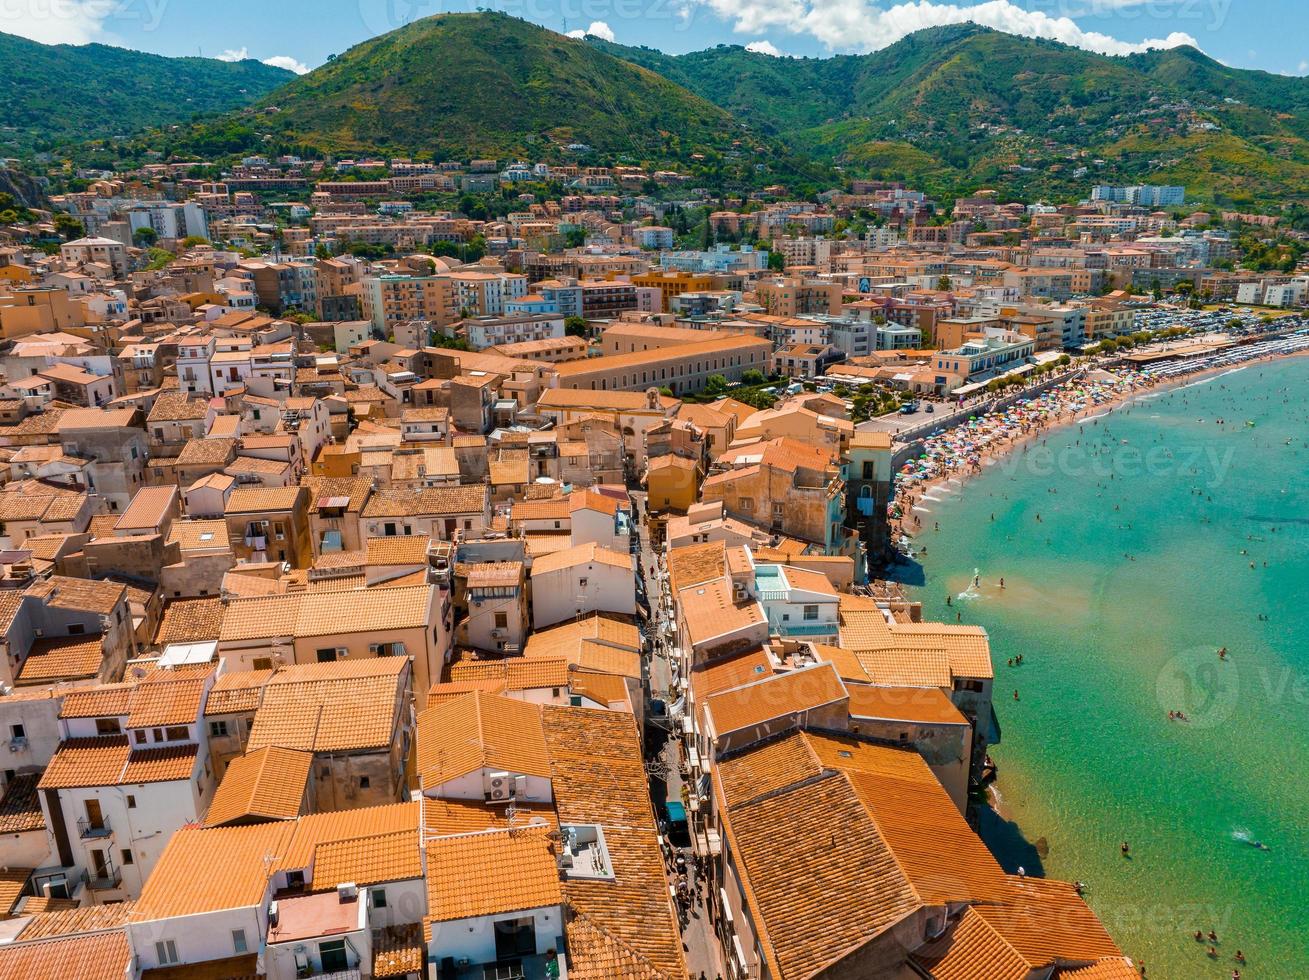 vista panorâmica aérea do cefalu, vila medieval da ilha da Sicília foto